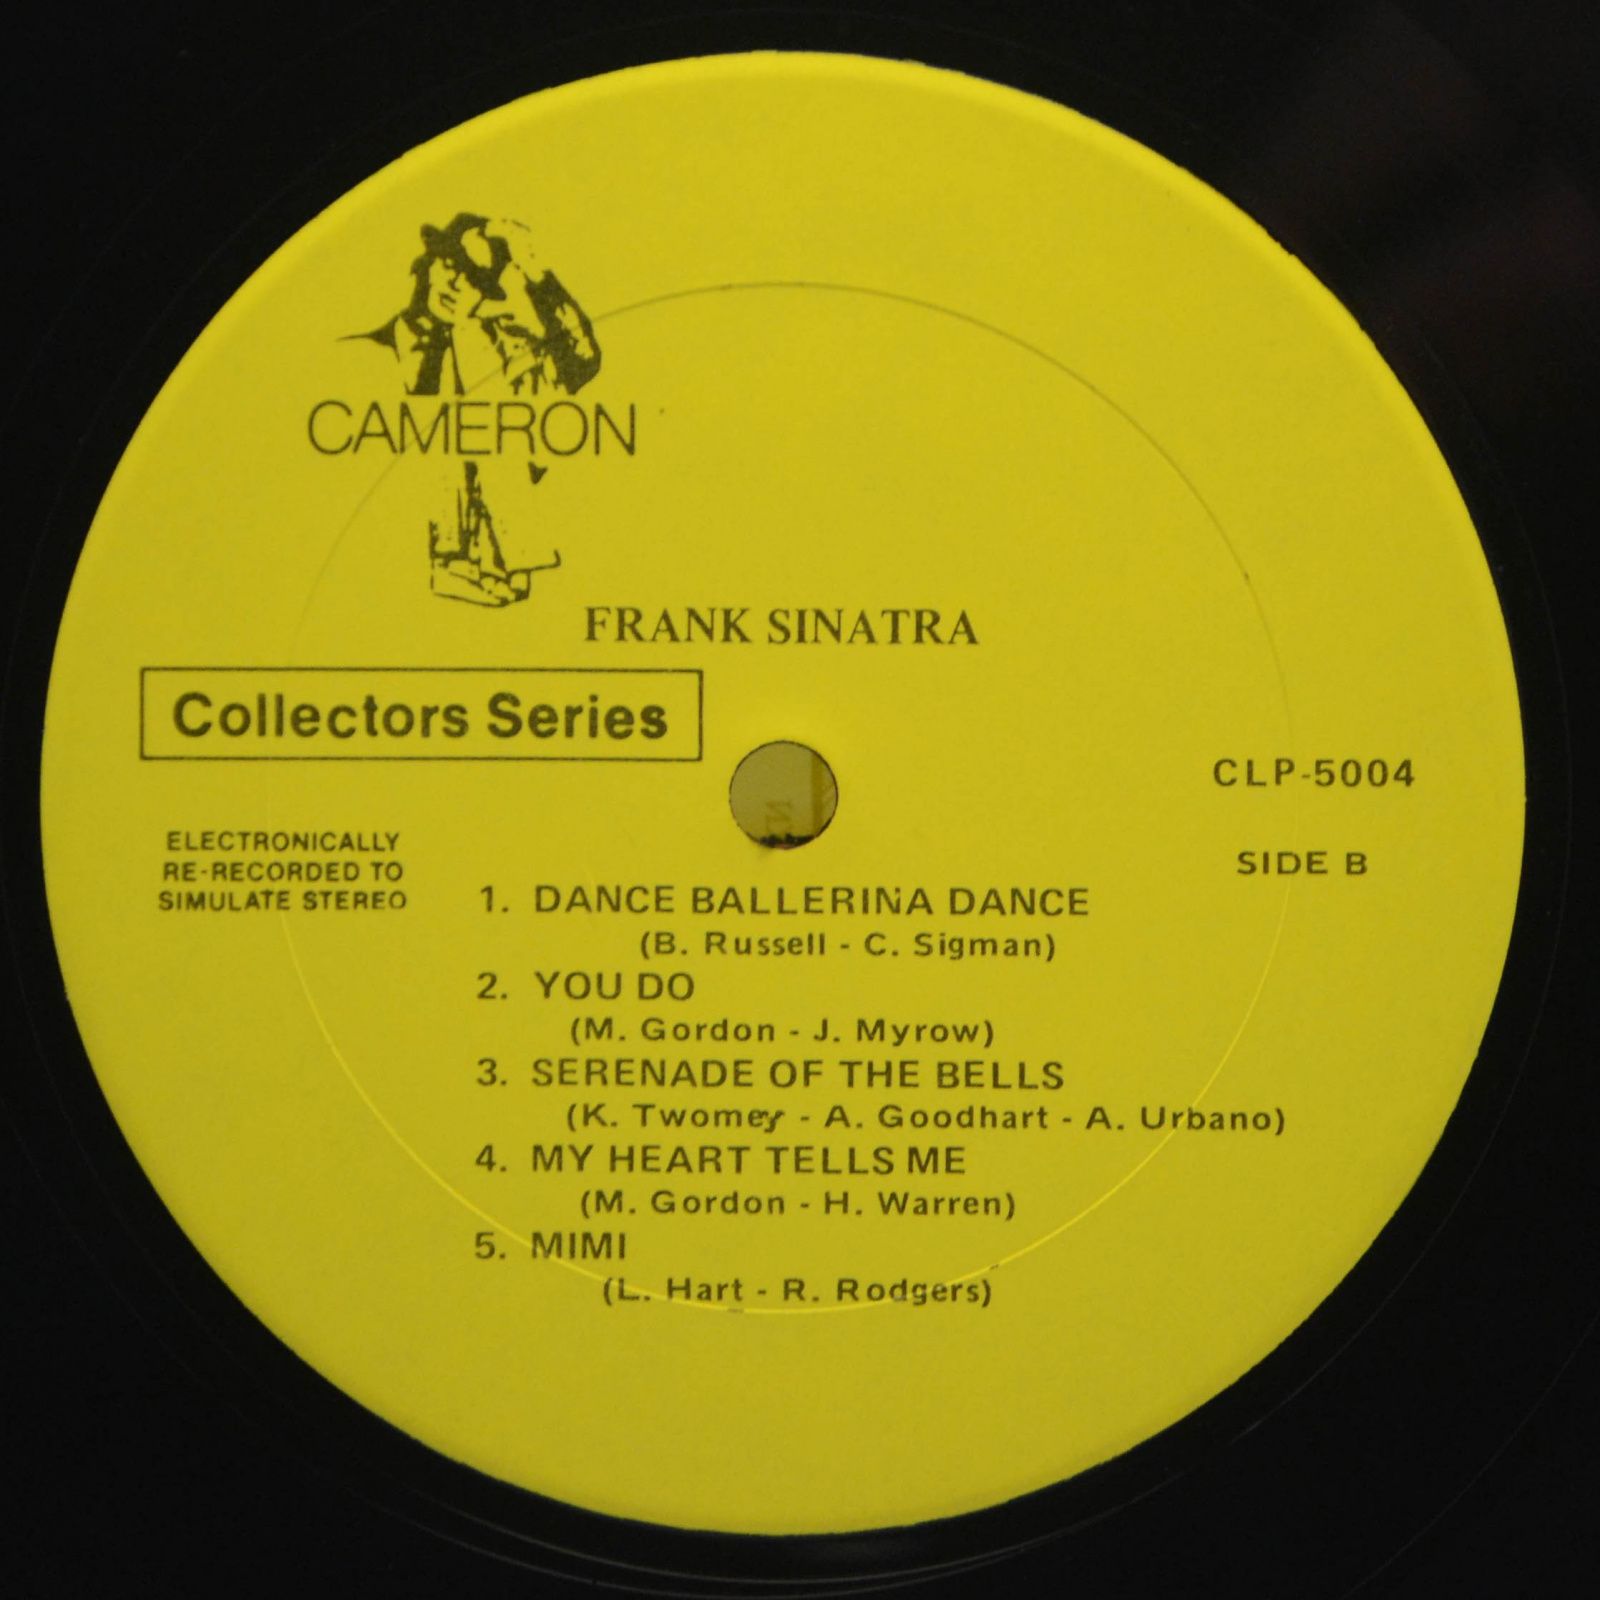 Frank Sinatra — Frank Sinatra (USA), 1975